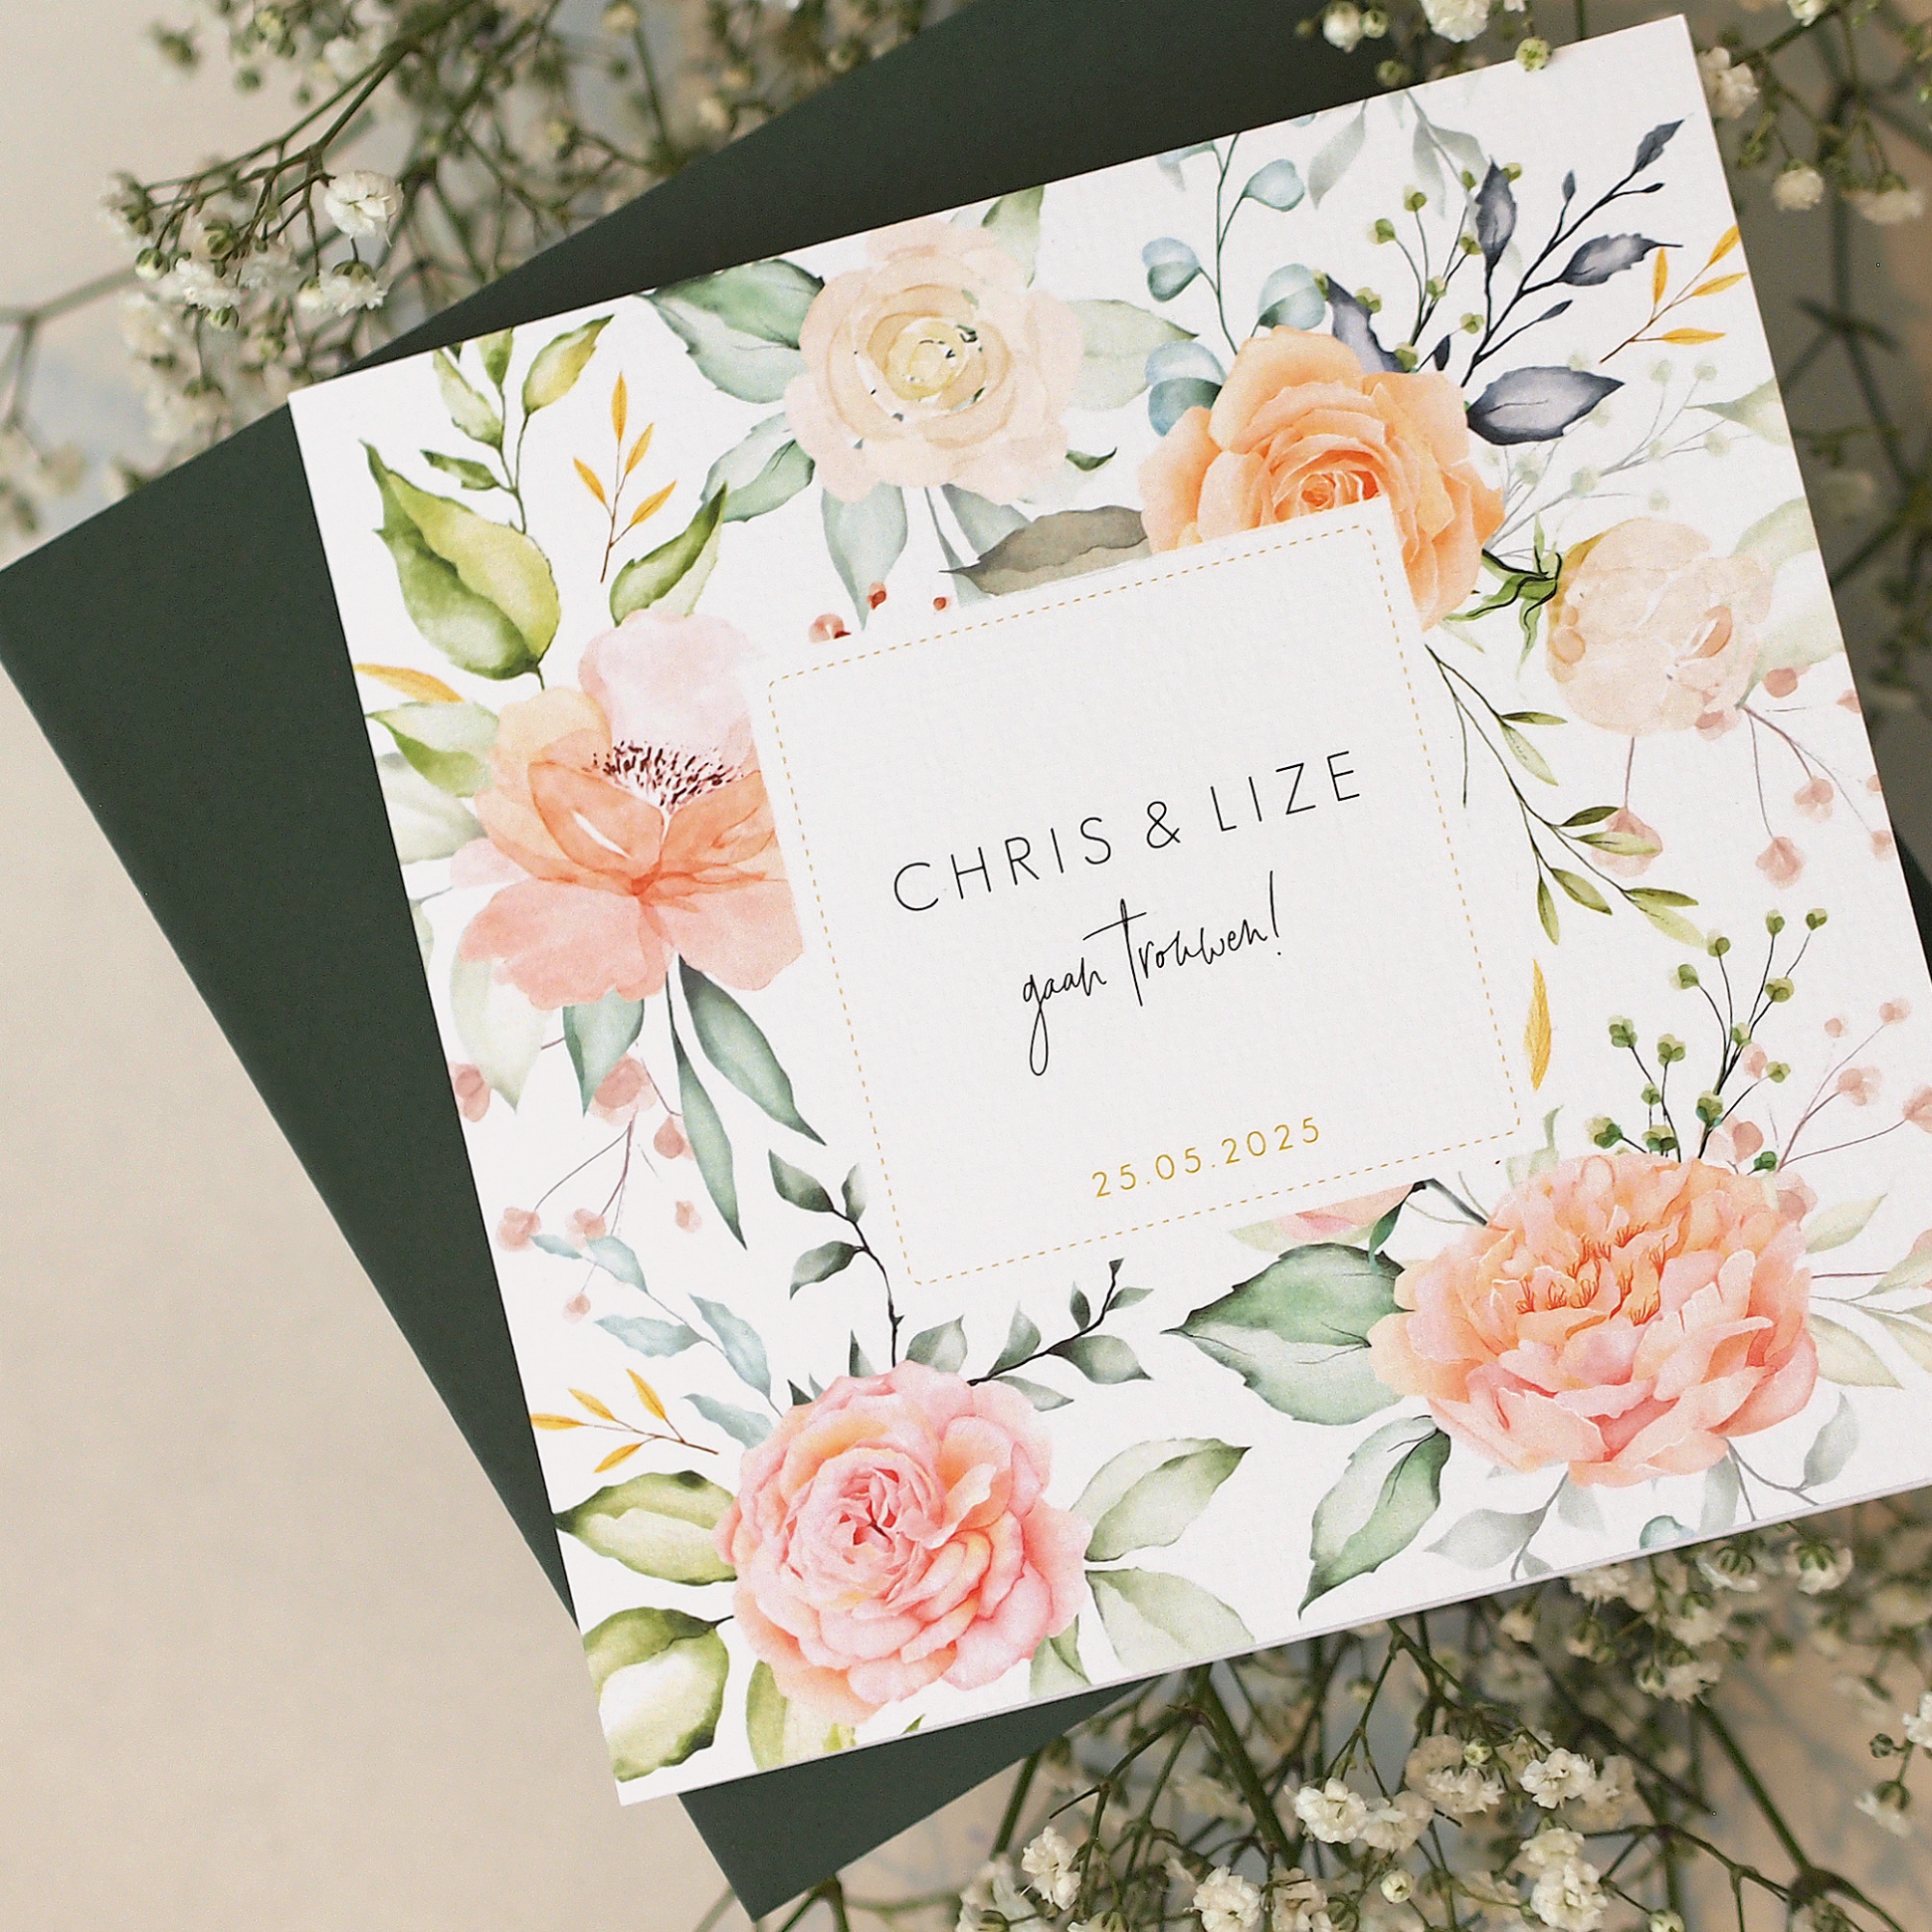 Romantische trouwkaart met bloemen en kader